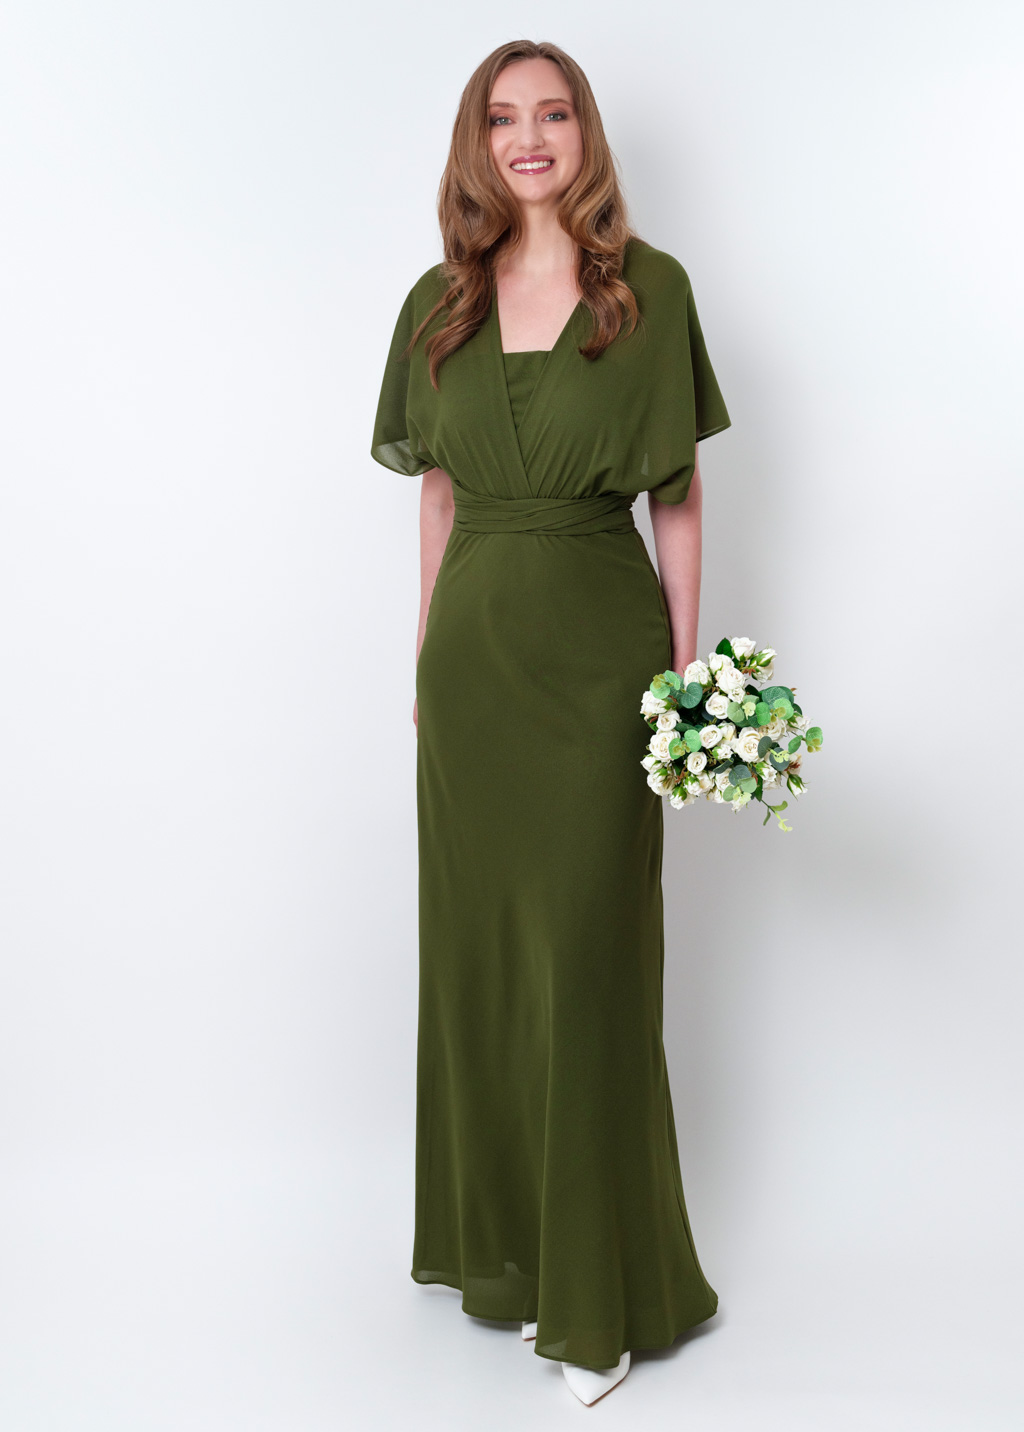 Olive green chiffon infinity long dress